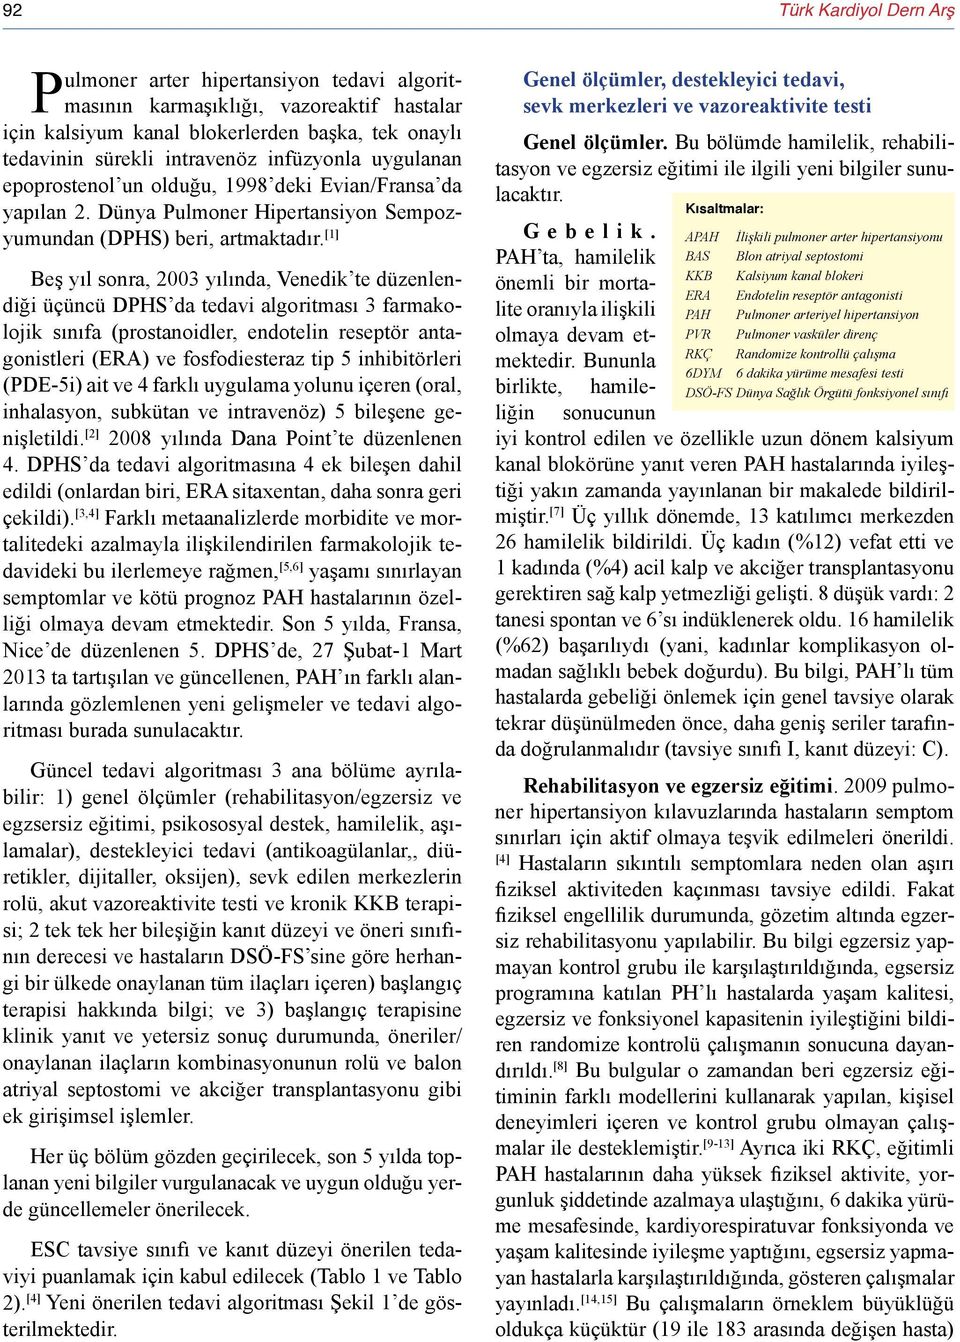 [1] Beş yıl sonra, 2003 yılında, Venedik te düzenlendiği üçüncü DPHS da tedavi algoritması 3 farmakolojik sınıfa (prostanoidler, endotelin reseptör antagonistleri (ERA) ve fosfodiesteraz tip 5